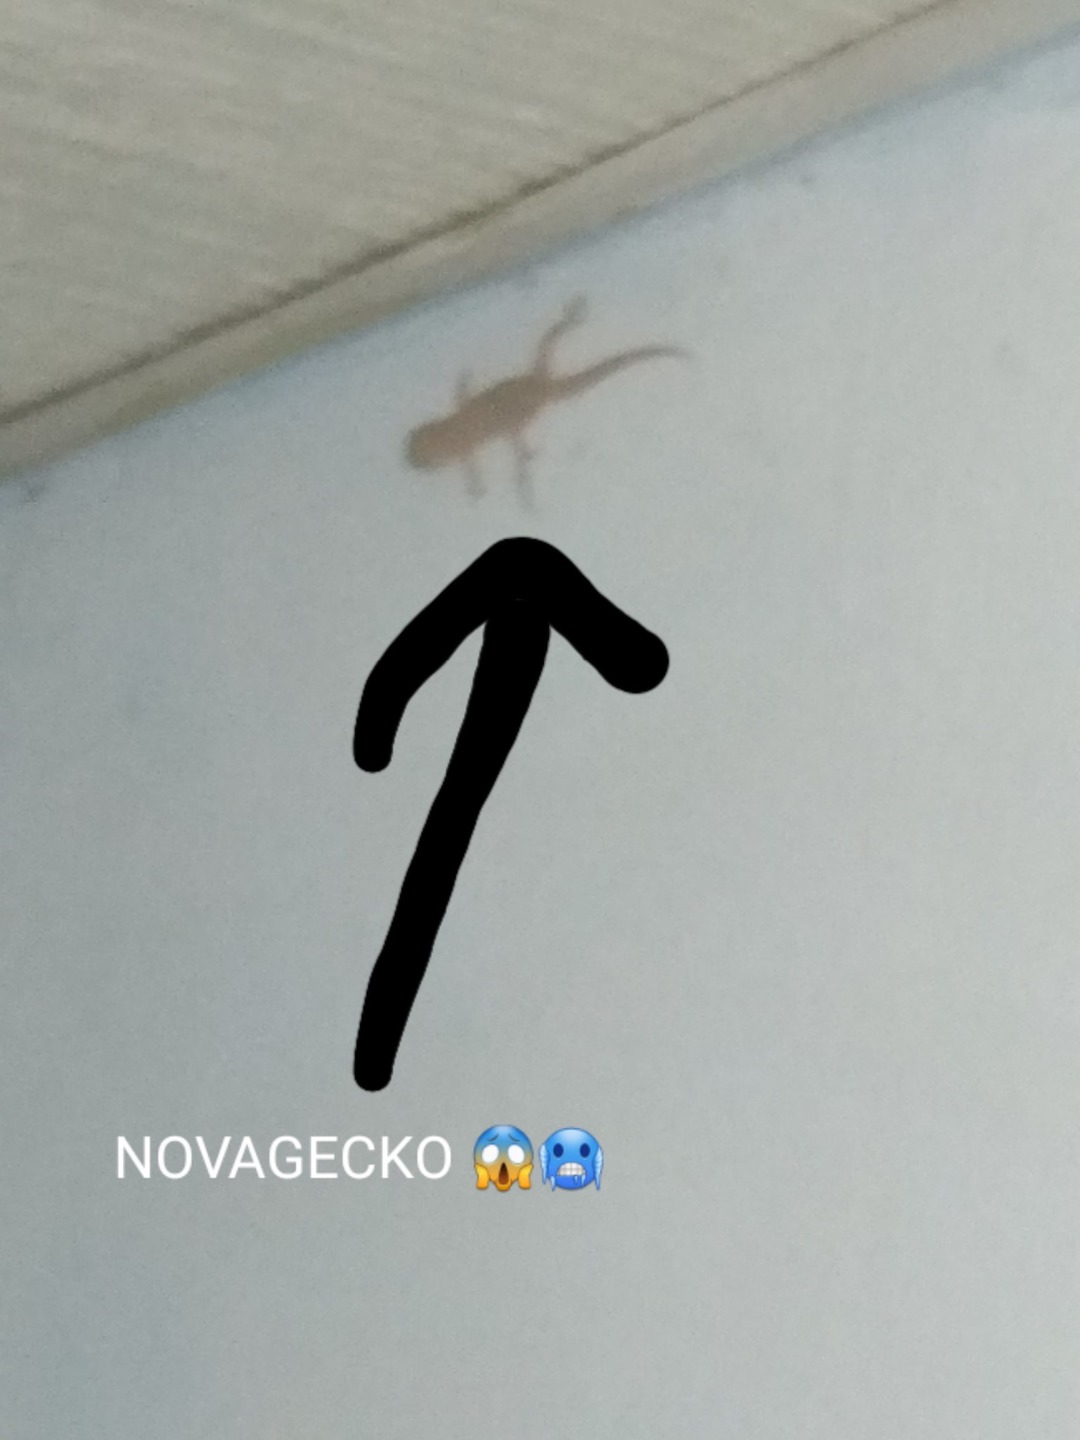 Novagecko?!! - meme